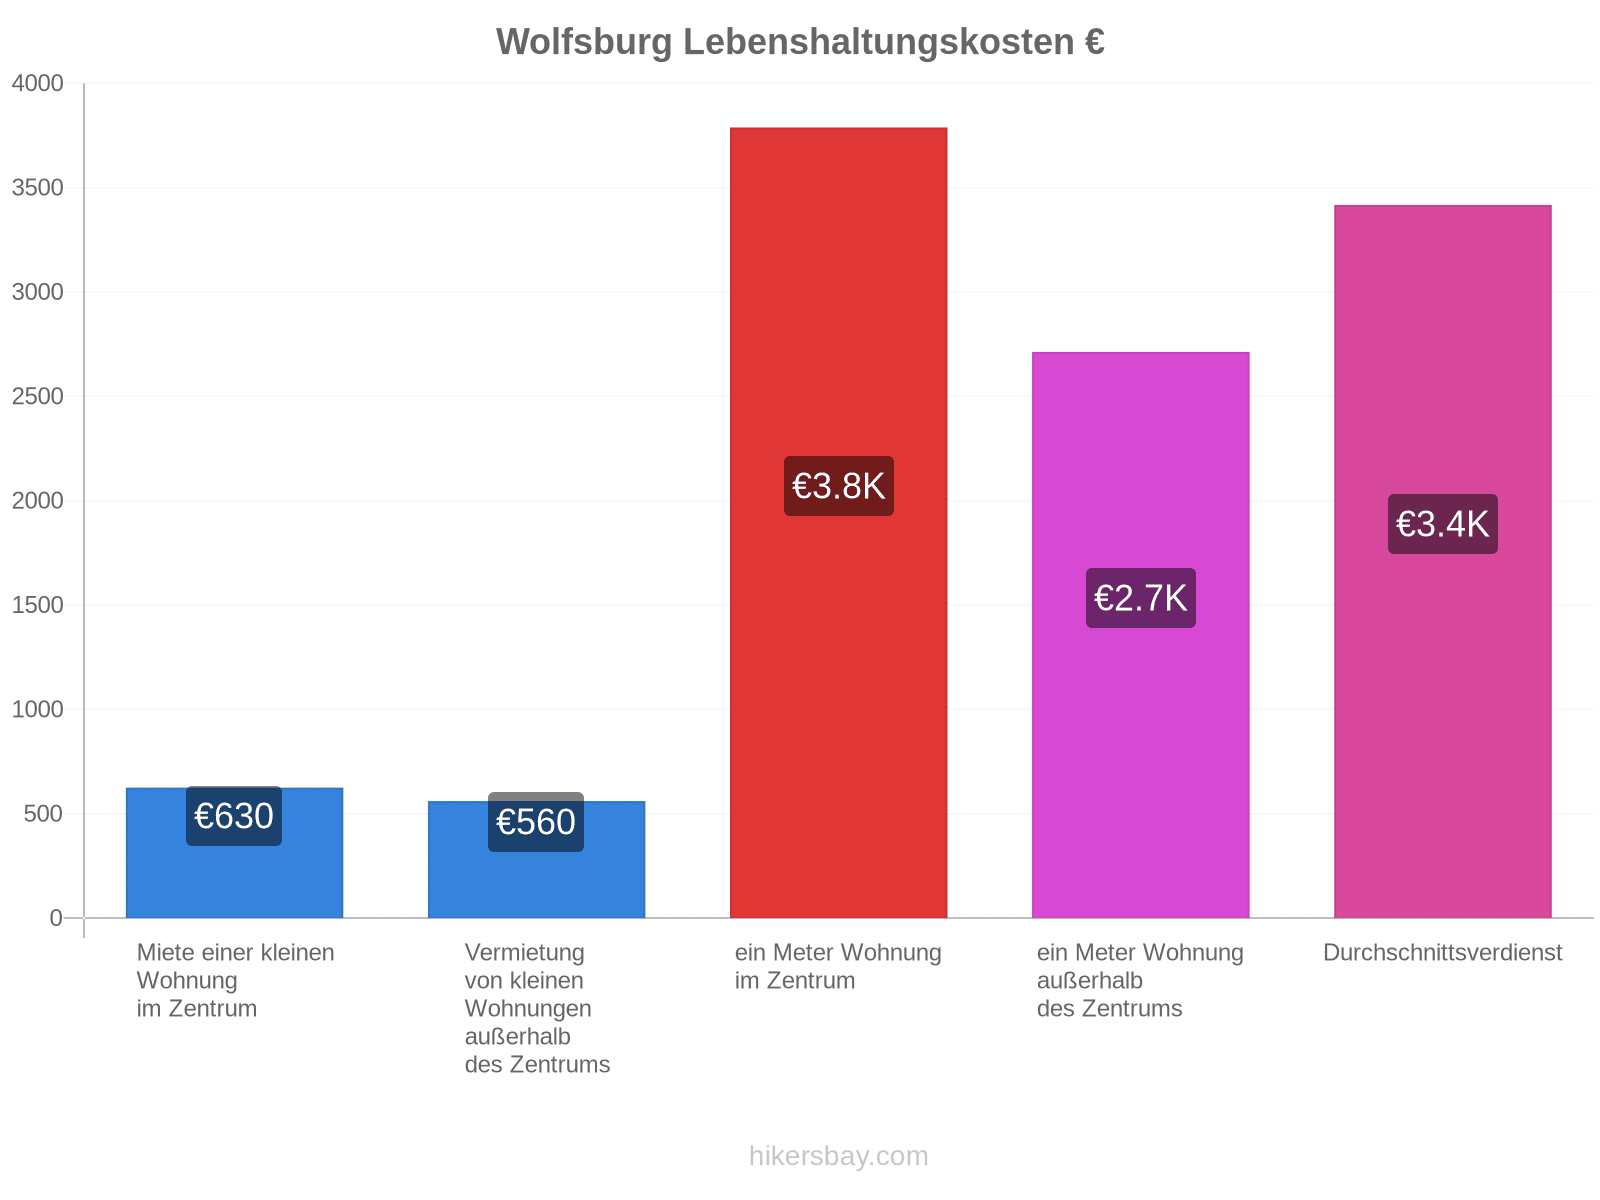 Wolfsburg Lebenshaltungskosten hikersbay.com